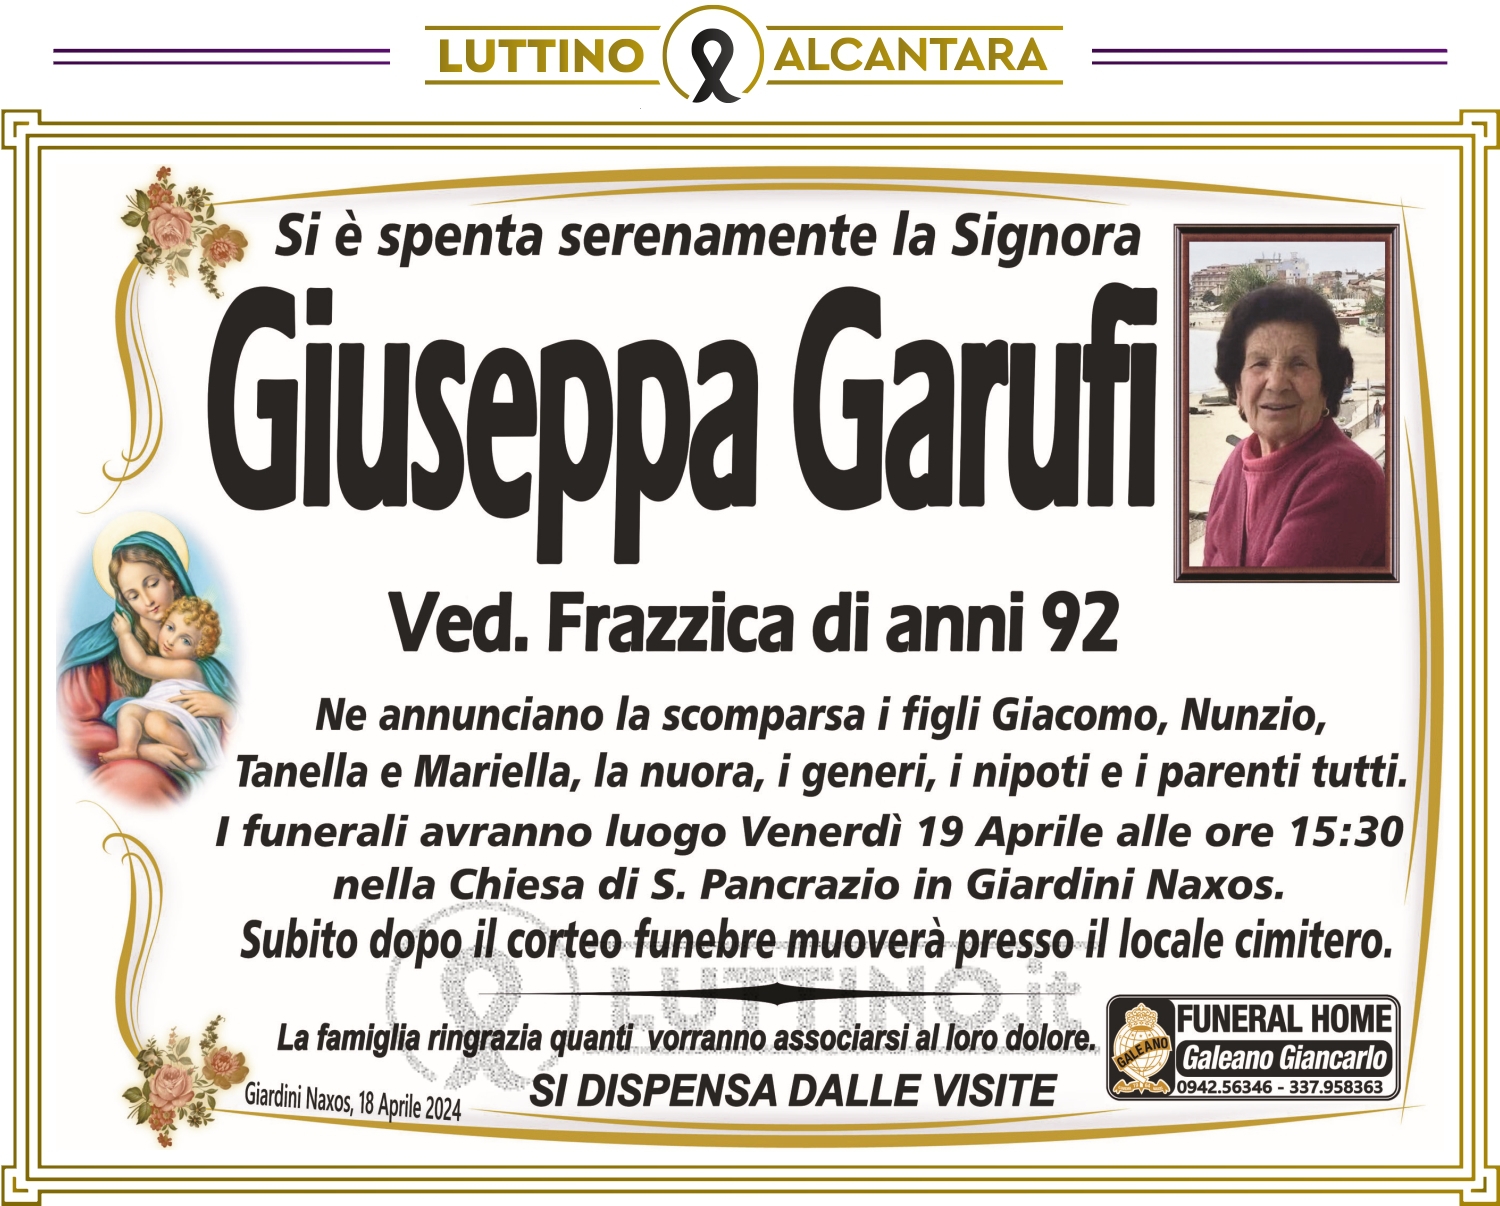 Giuseppa Garufi